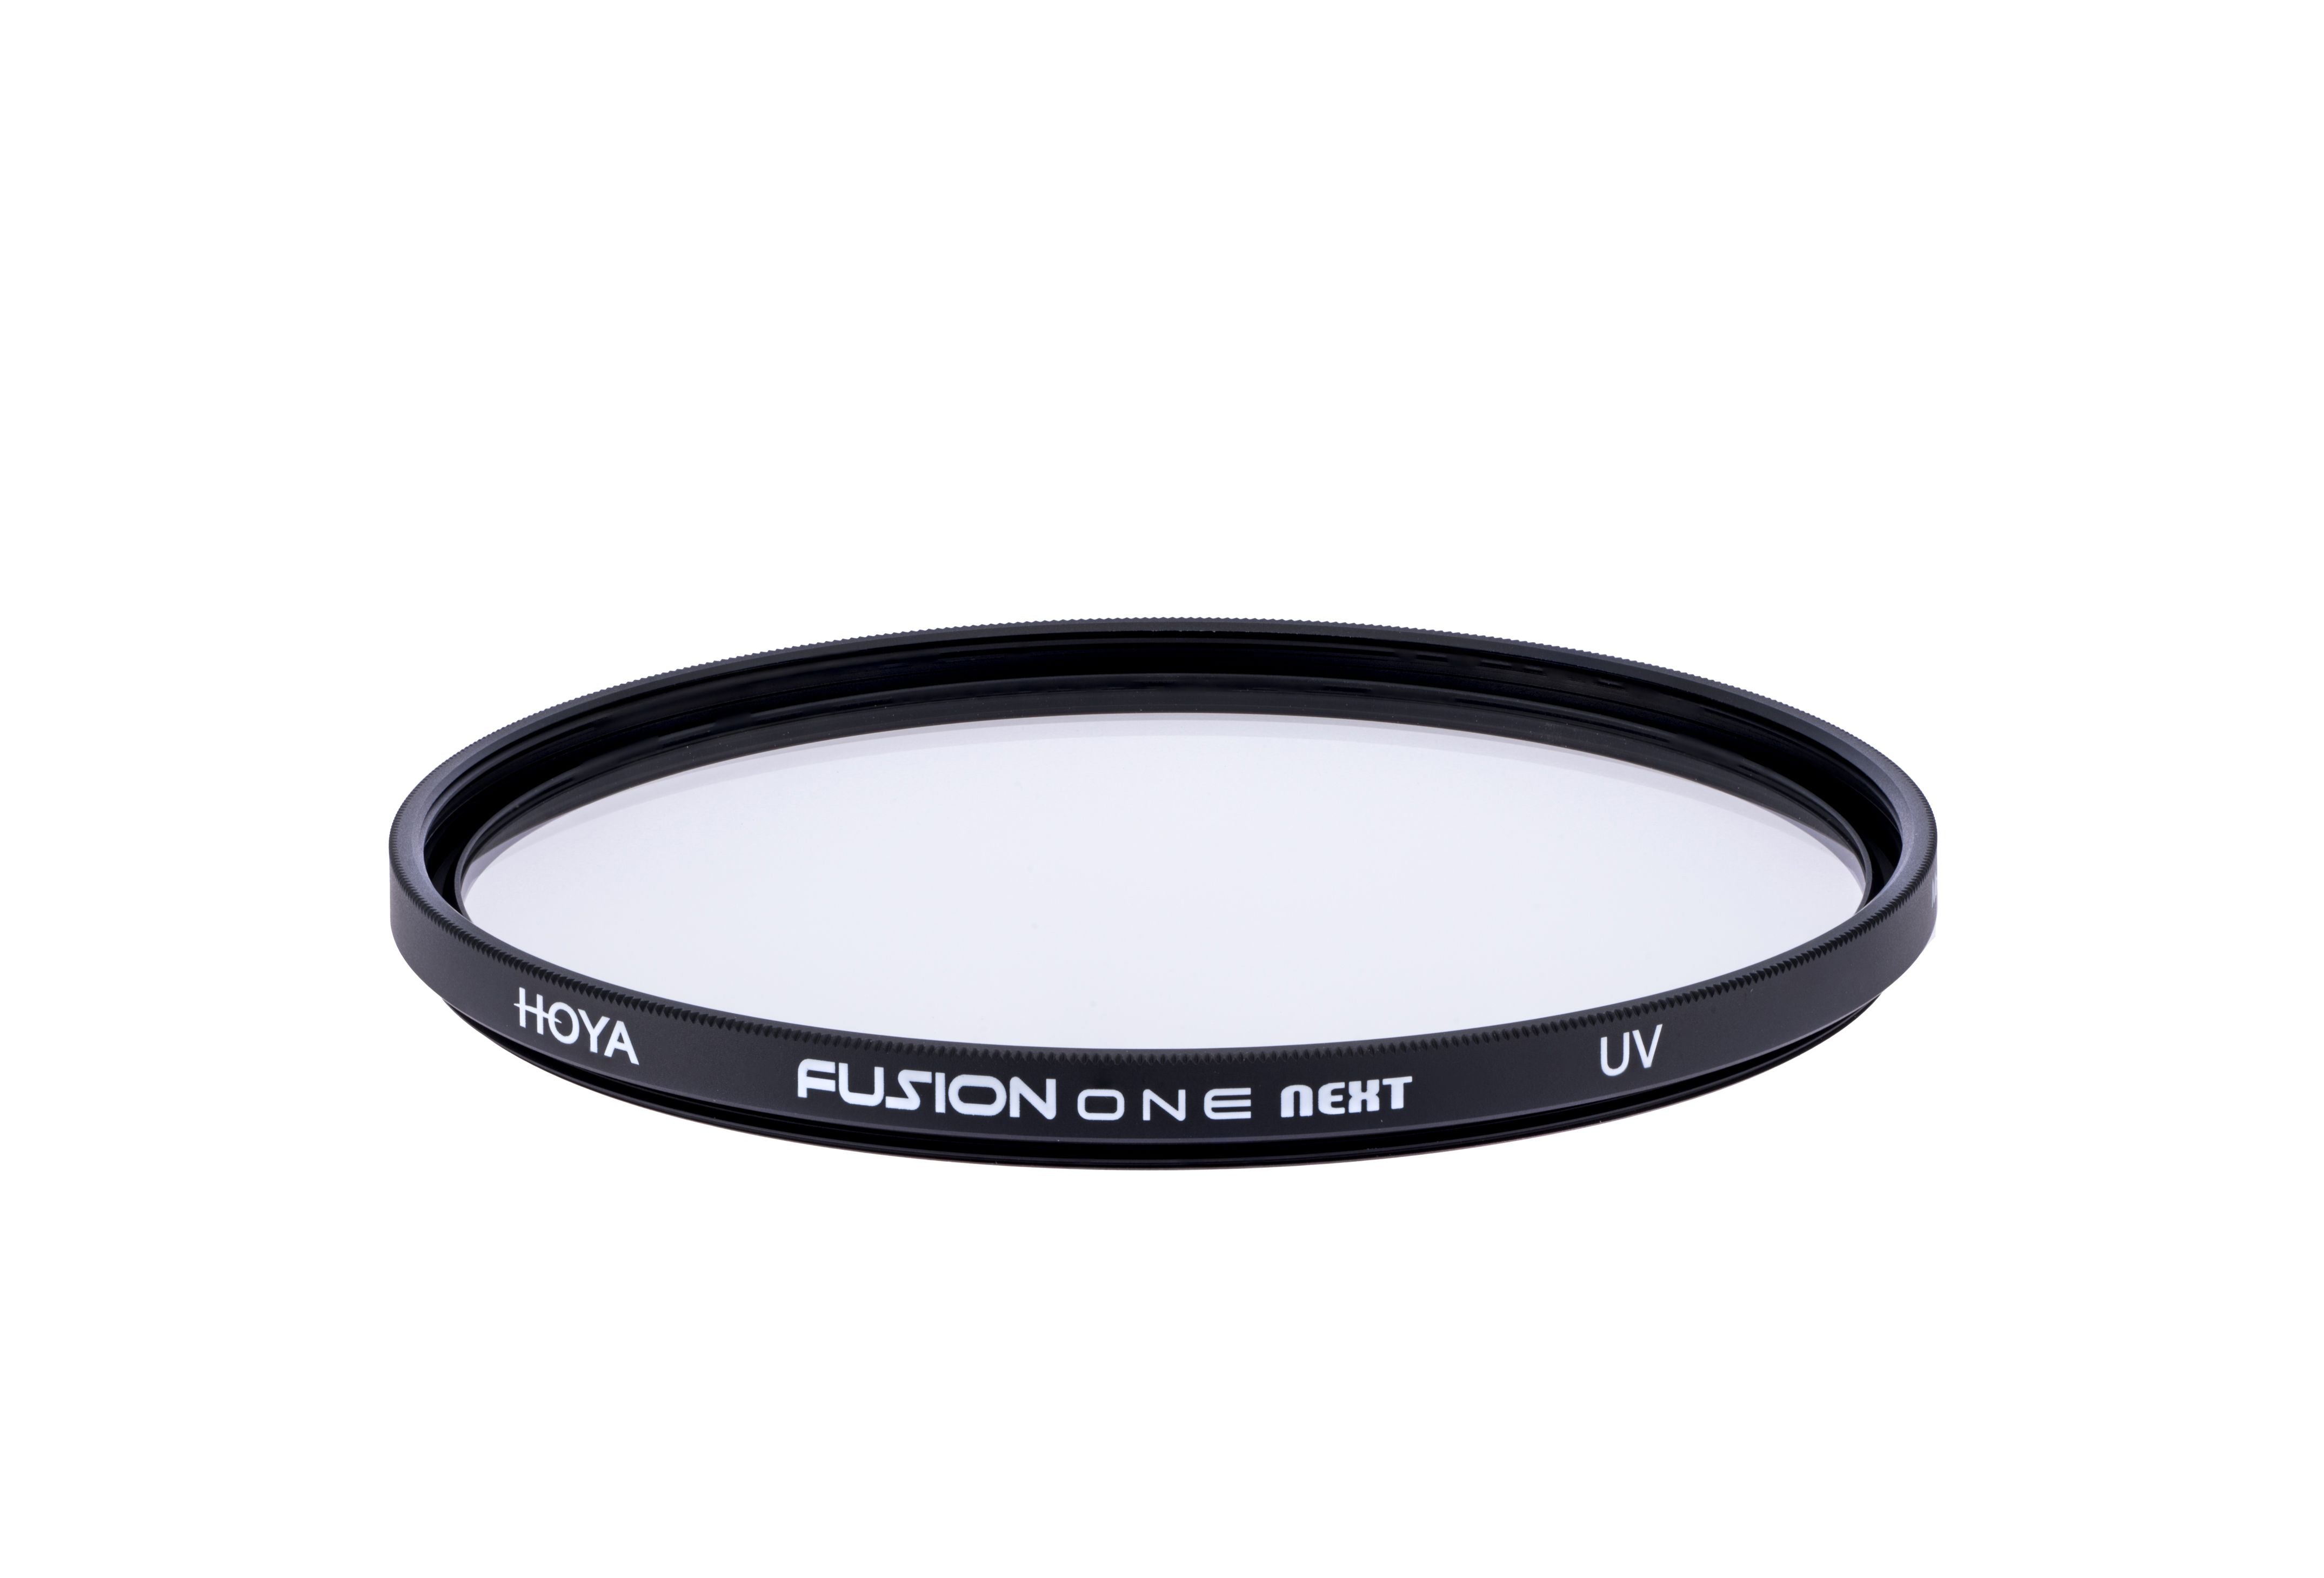 Product Image of Hoya Fusion One Next UV Filter